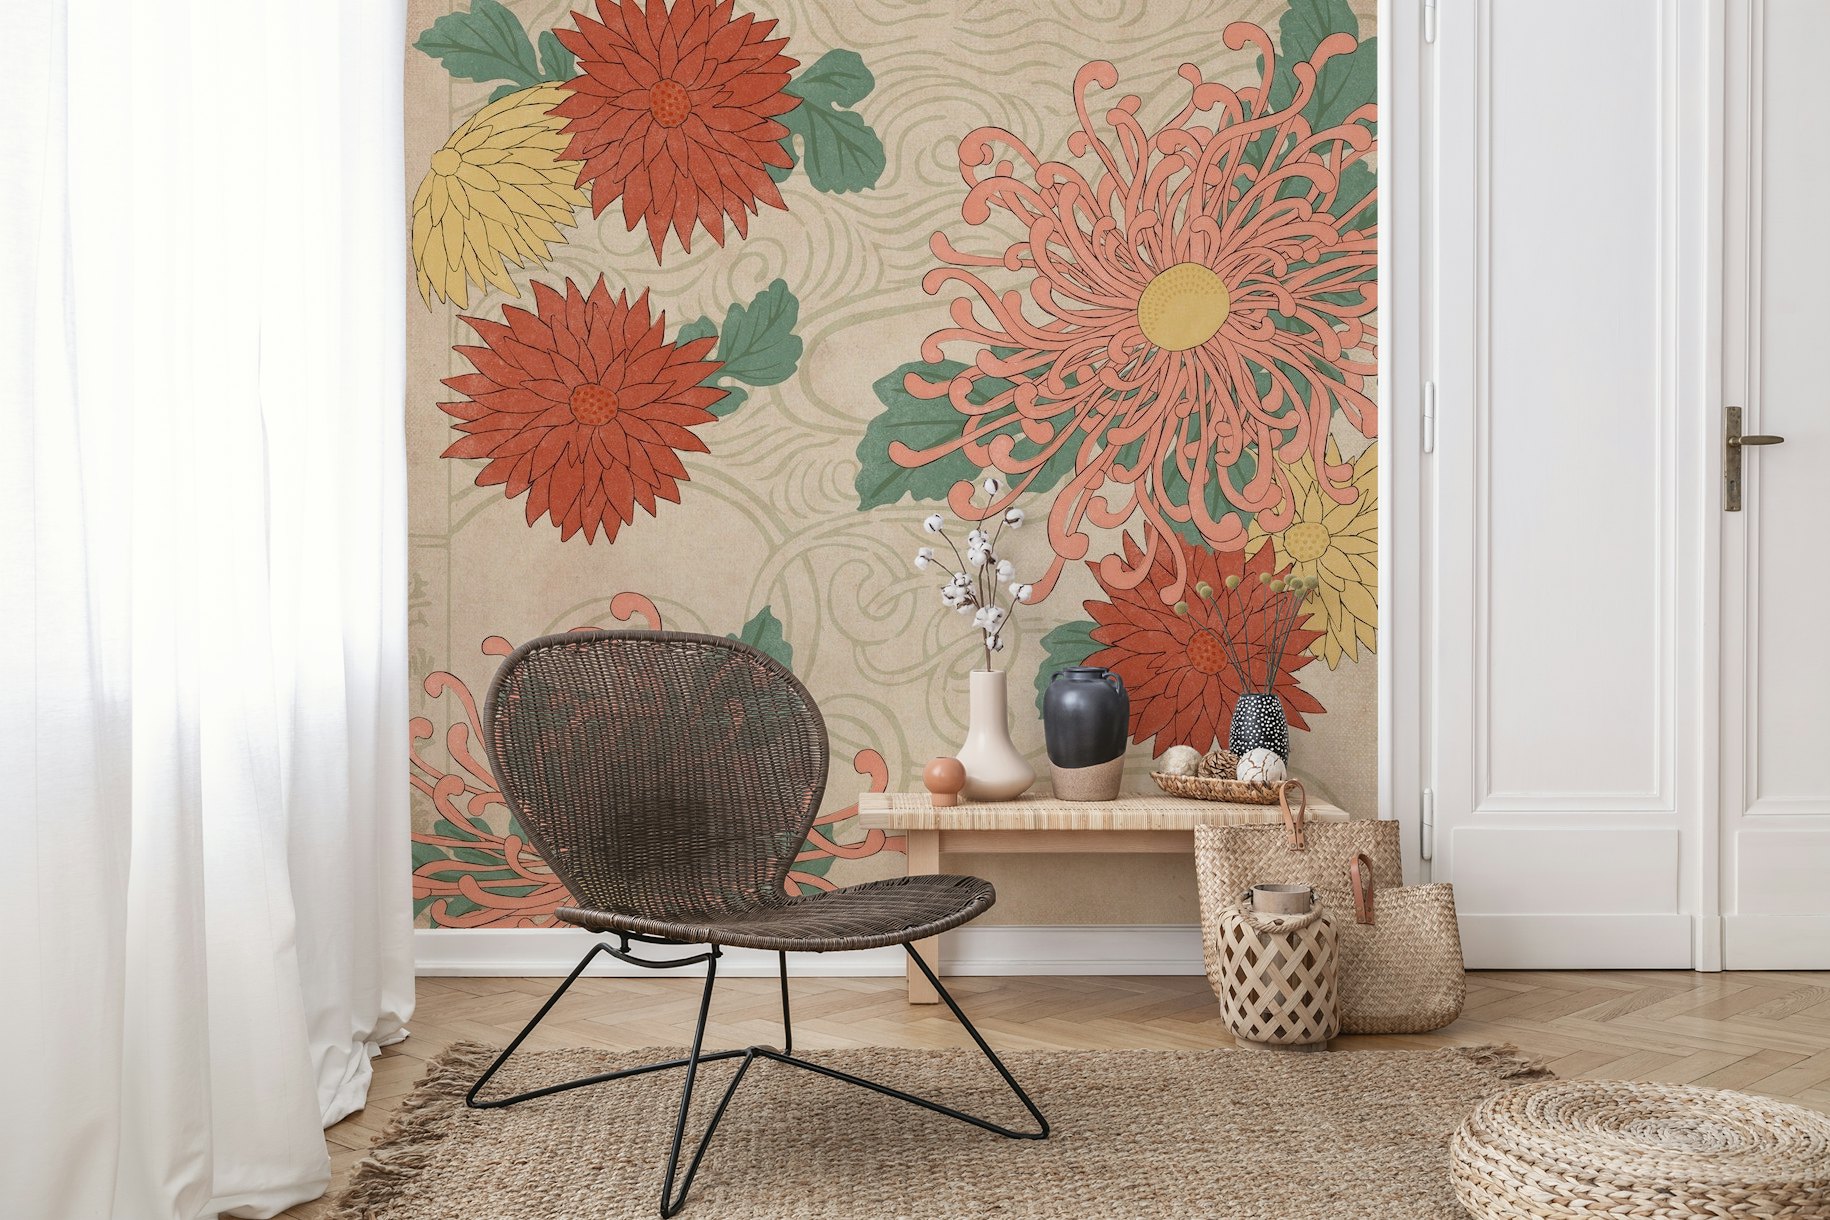 Japanese Chrysanthemum wallpaper